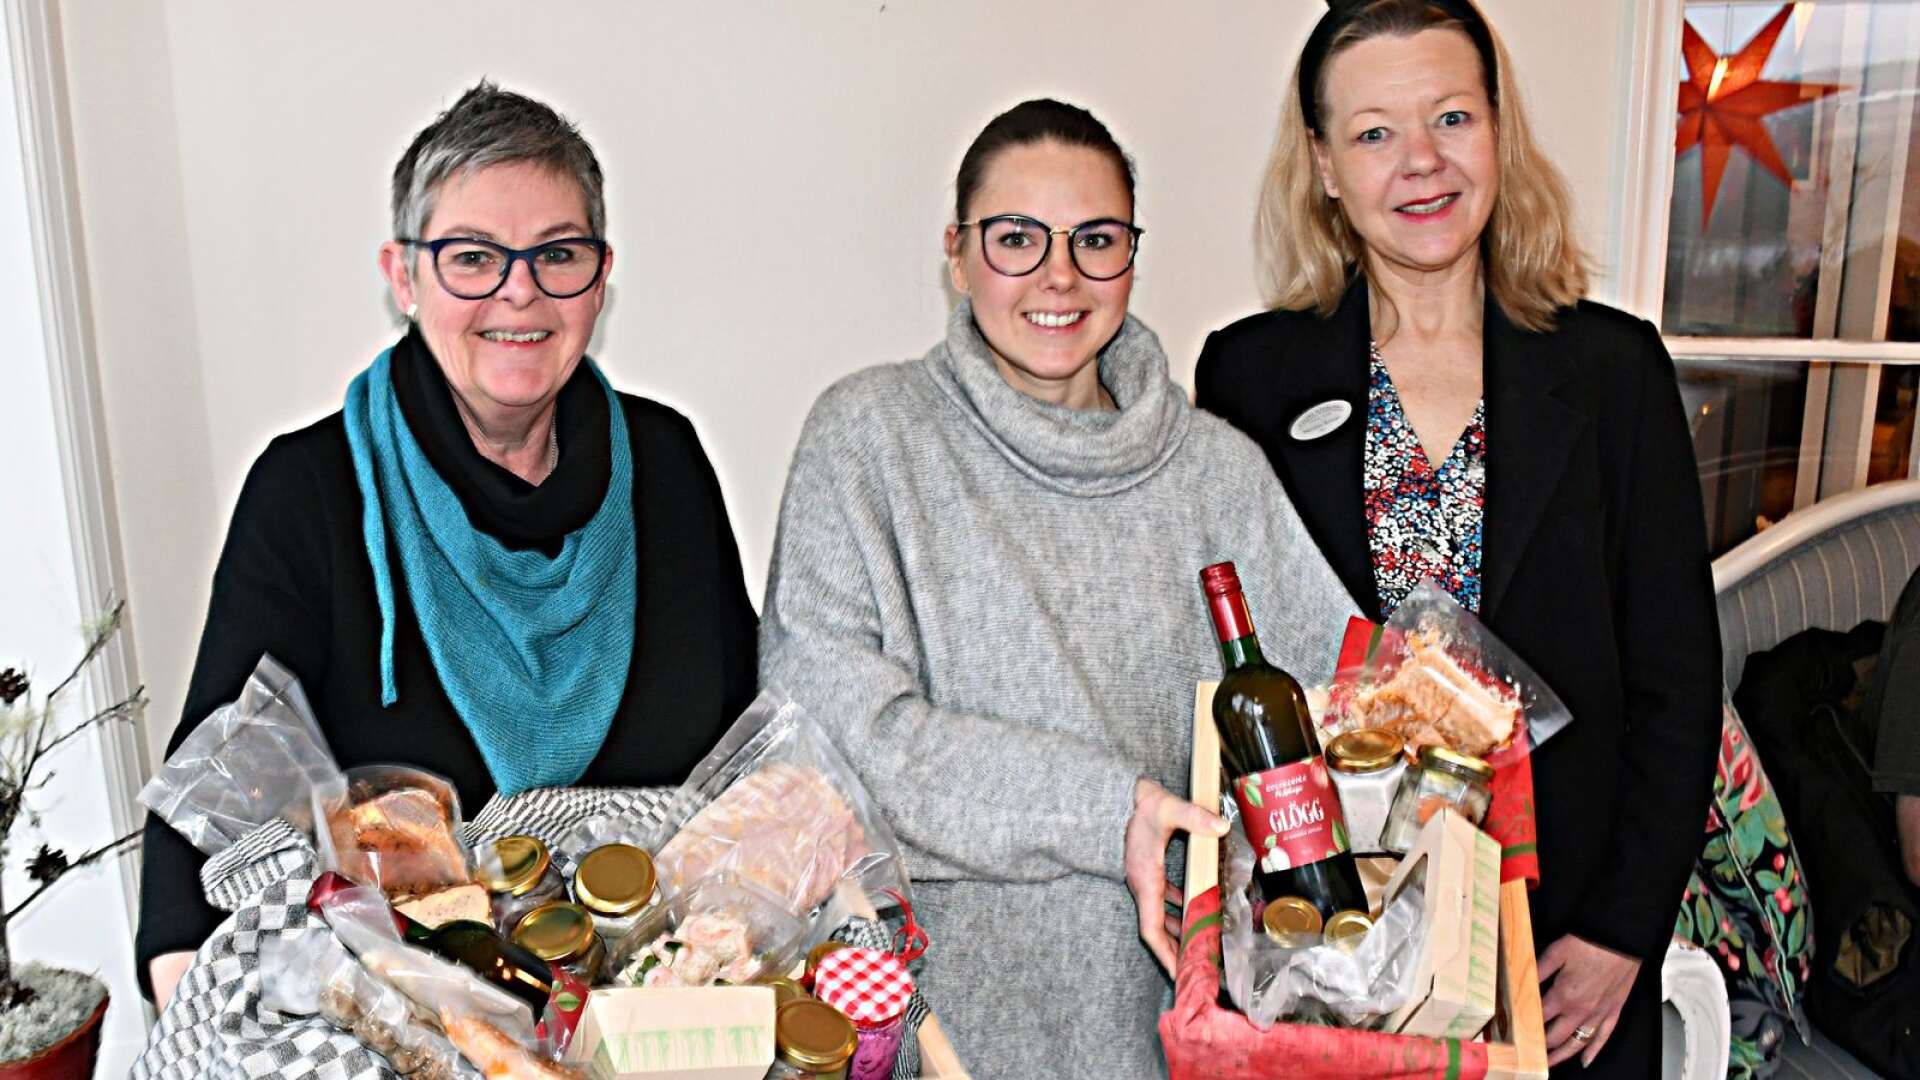 Kerstin och Johanna Andersson på Kalasmakeriet i Gräsmark har inlett samarbete med Marianne Krönsjö på Ulvsby herrgård och Kulinarika, och erbjuder jullådor innehållande de tre företagens delikatesser